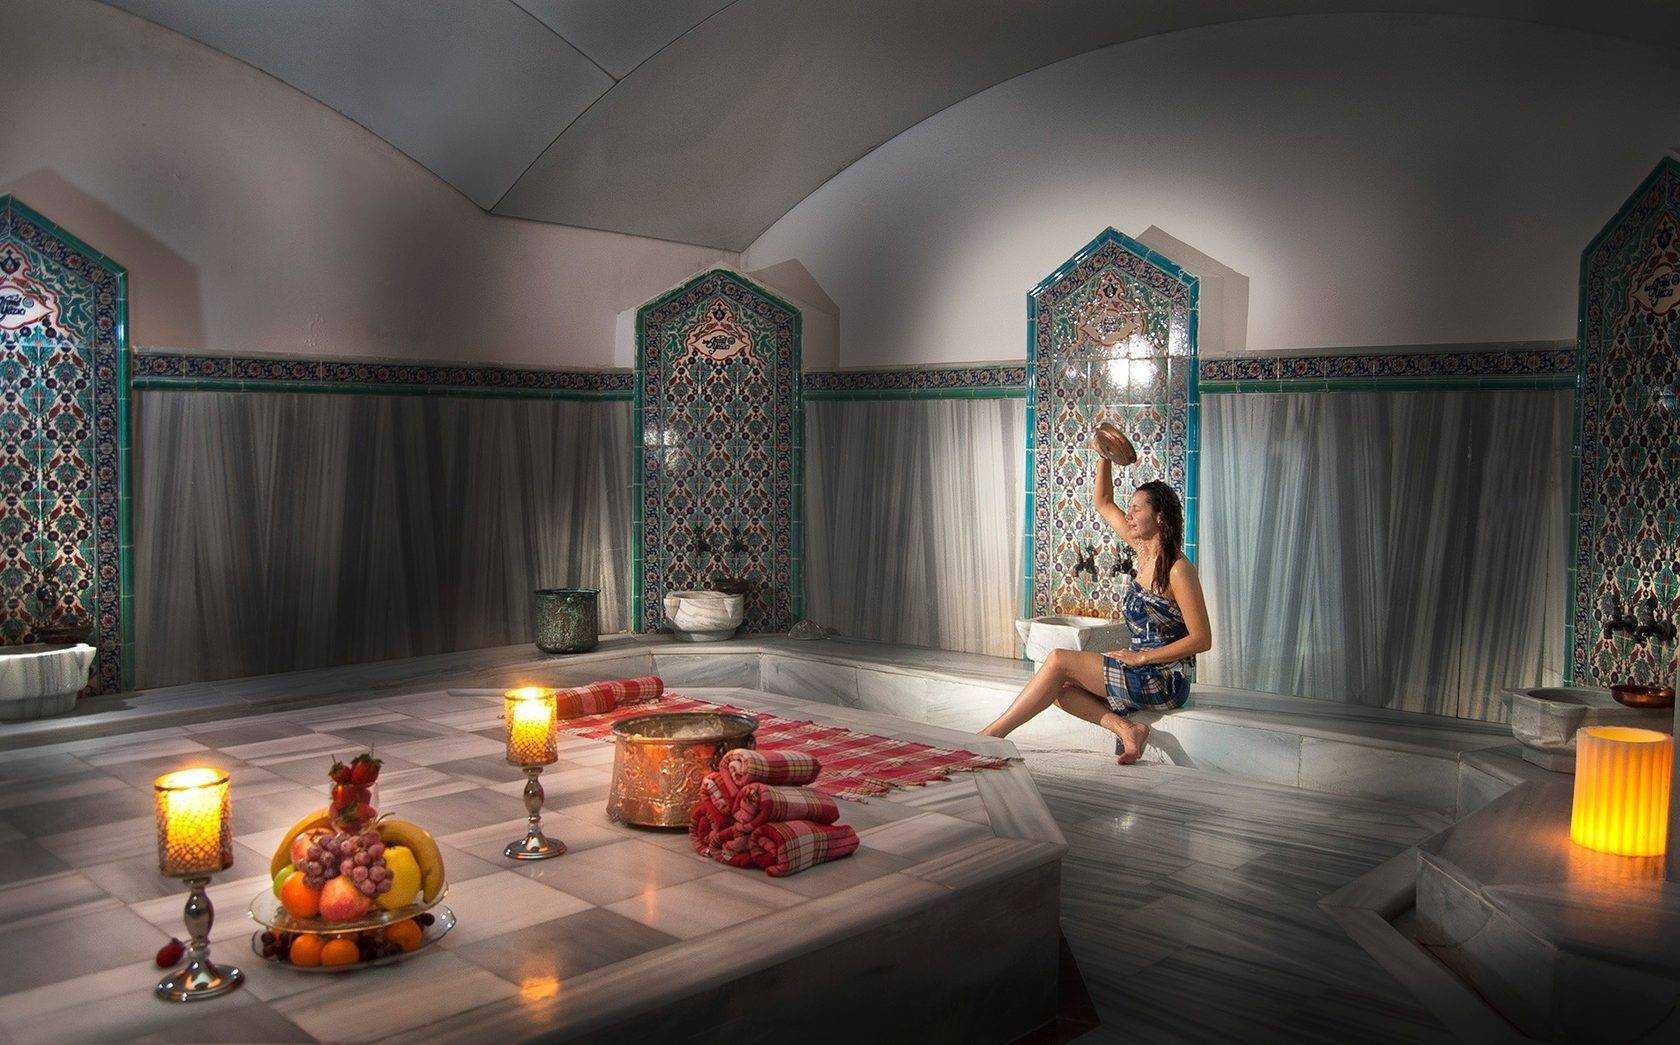 Турецкая баня хаммам: что нужно для посещения, польза и вред, фото